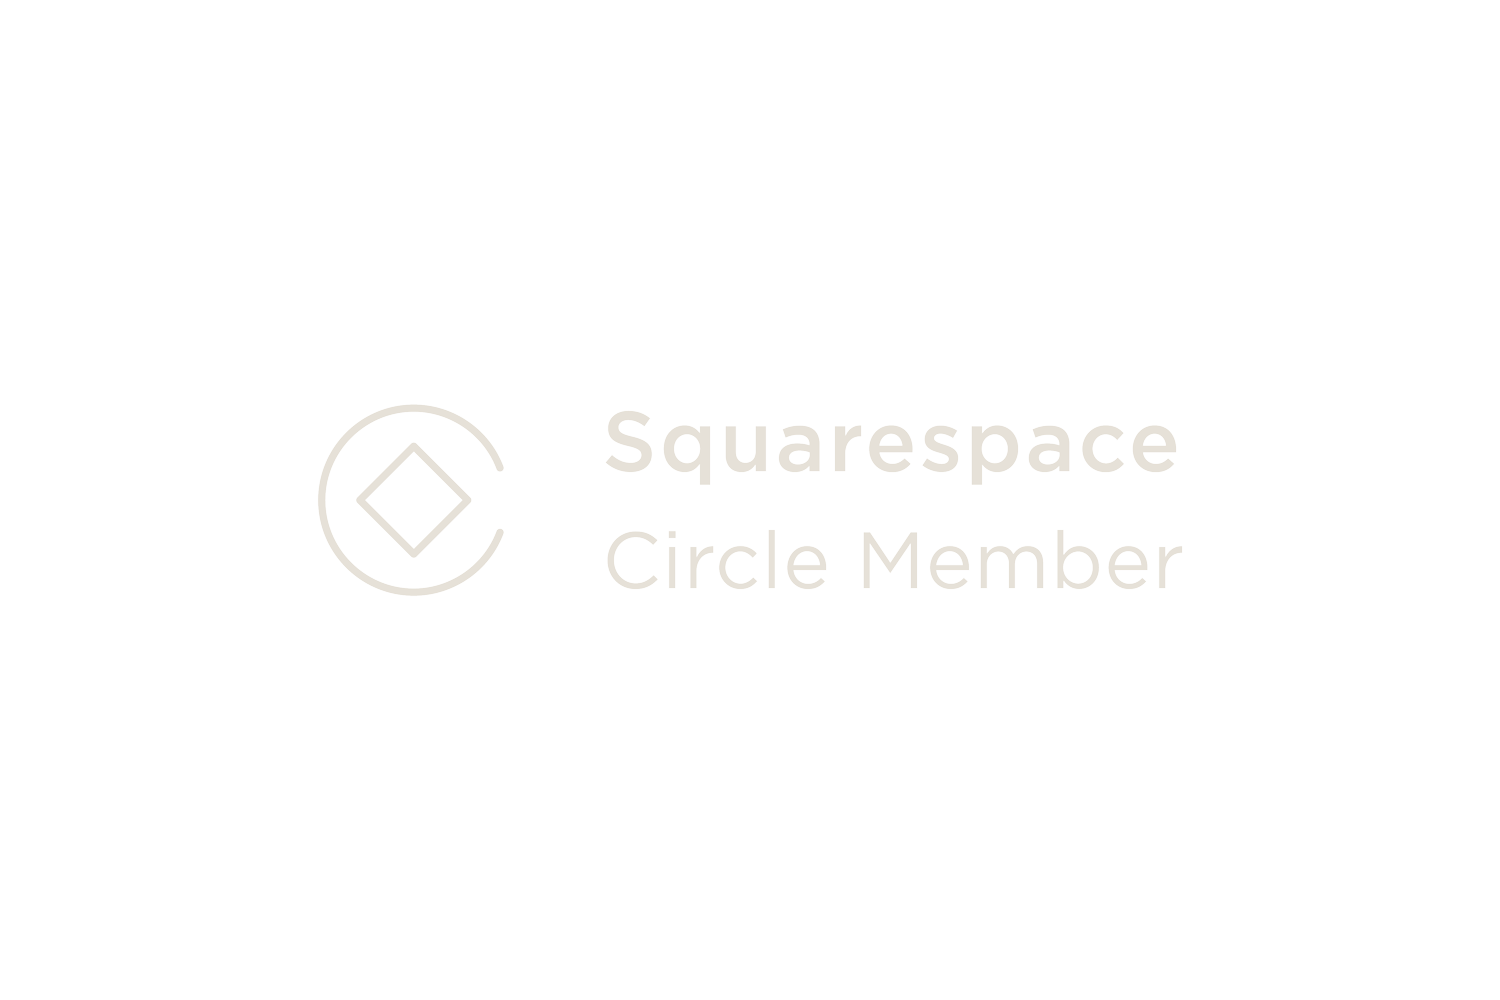 Squarespace圆成员标志